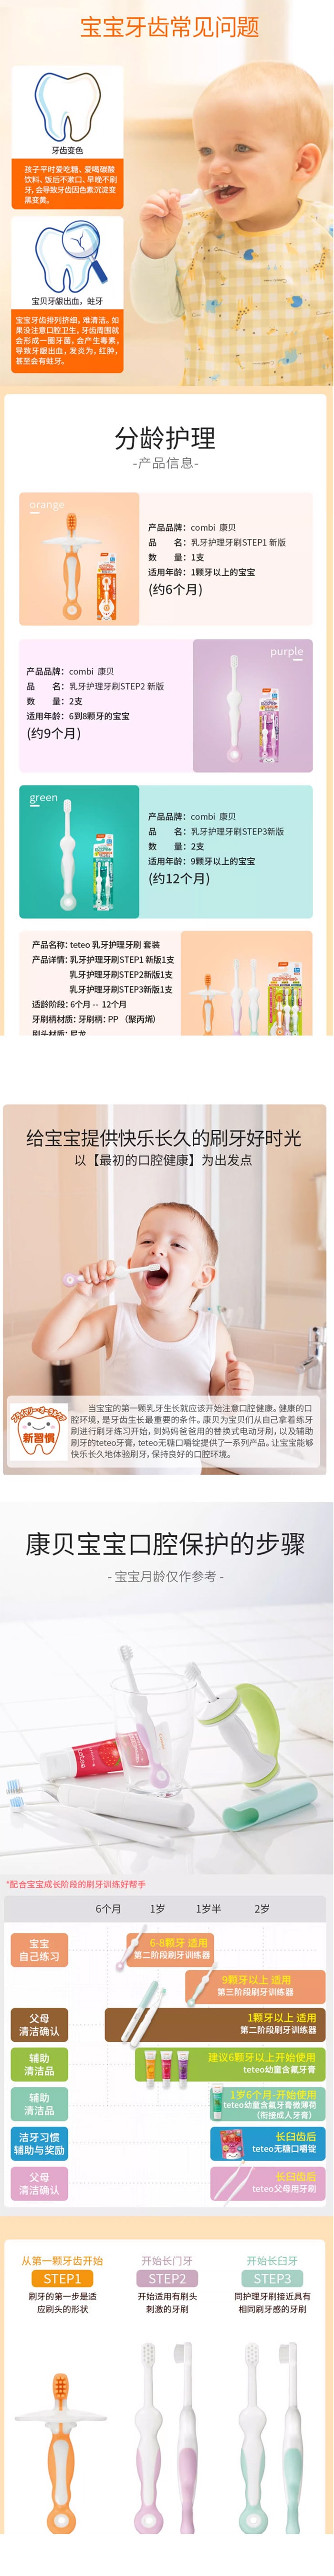 【日本直效郵件】COMBI康貝 12個月寶寶乳牙刷STEP3 2支裝